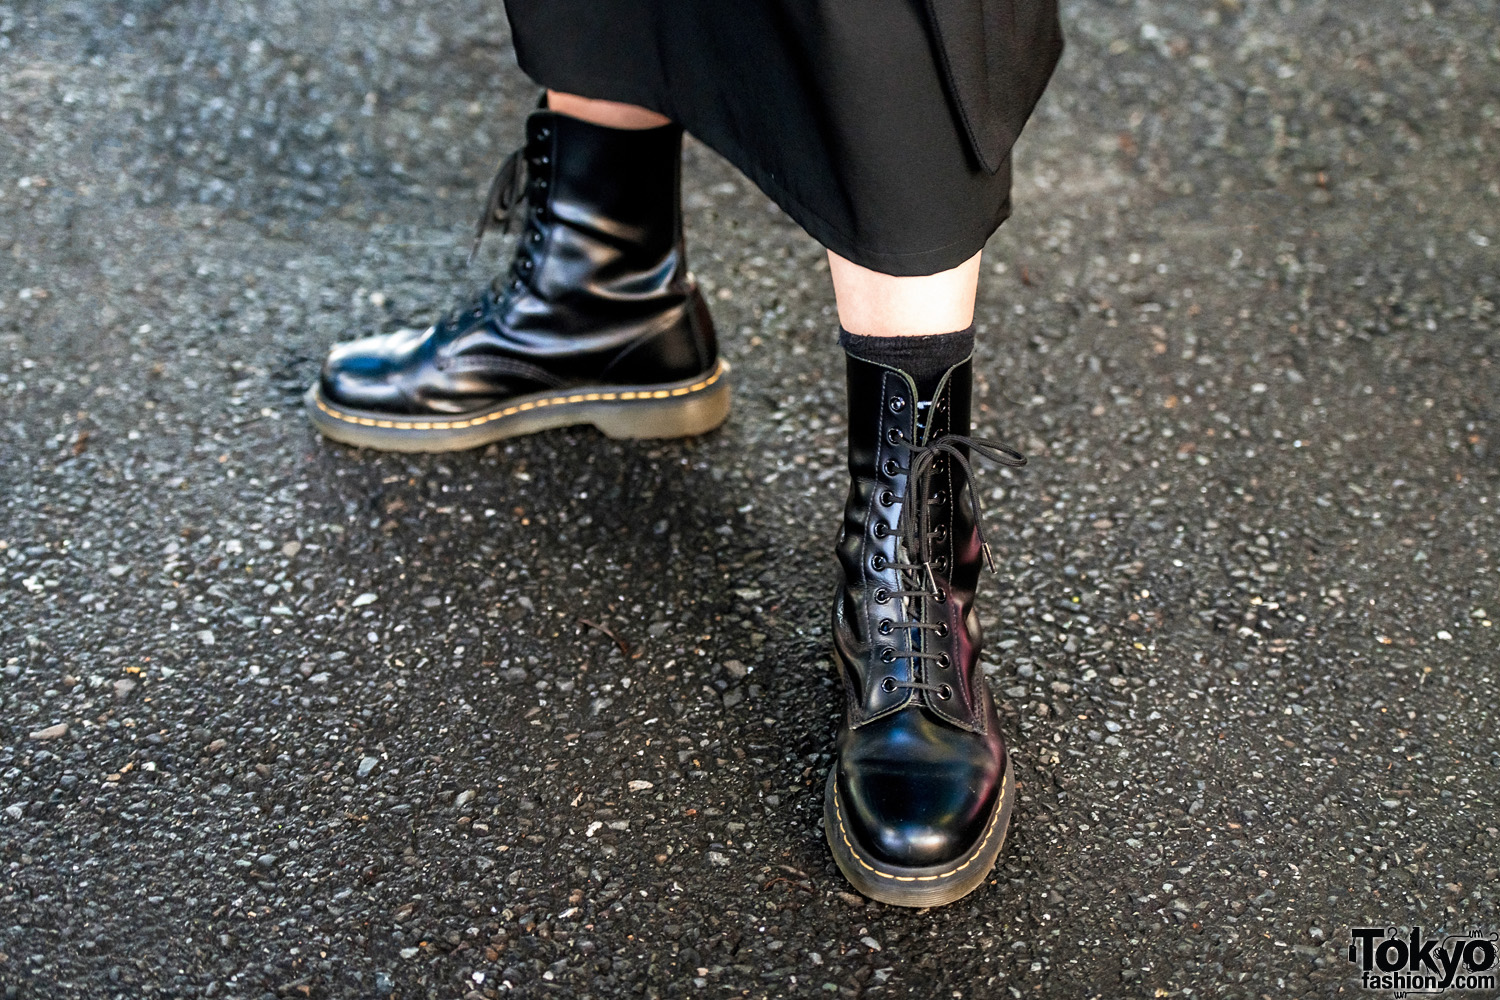 Yohji Yamamoto Streetwear Styles in Harajuku w/Dr. Martens Boots, Kei ...